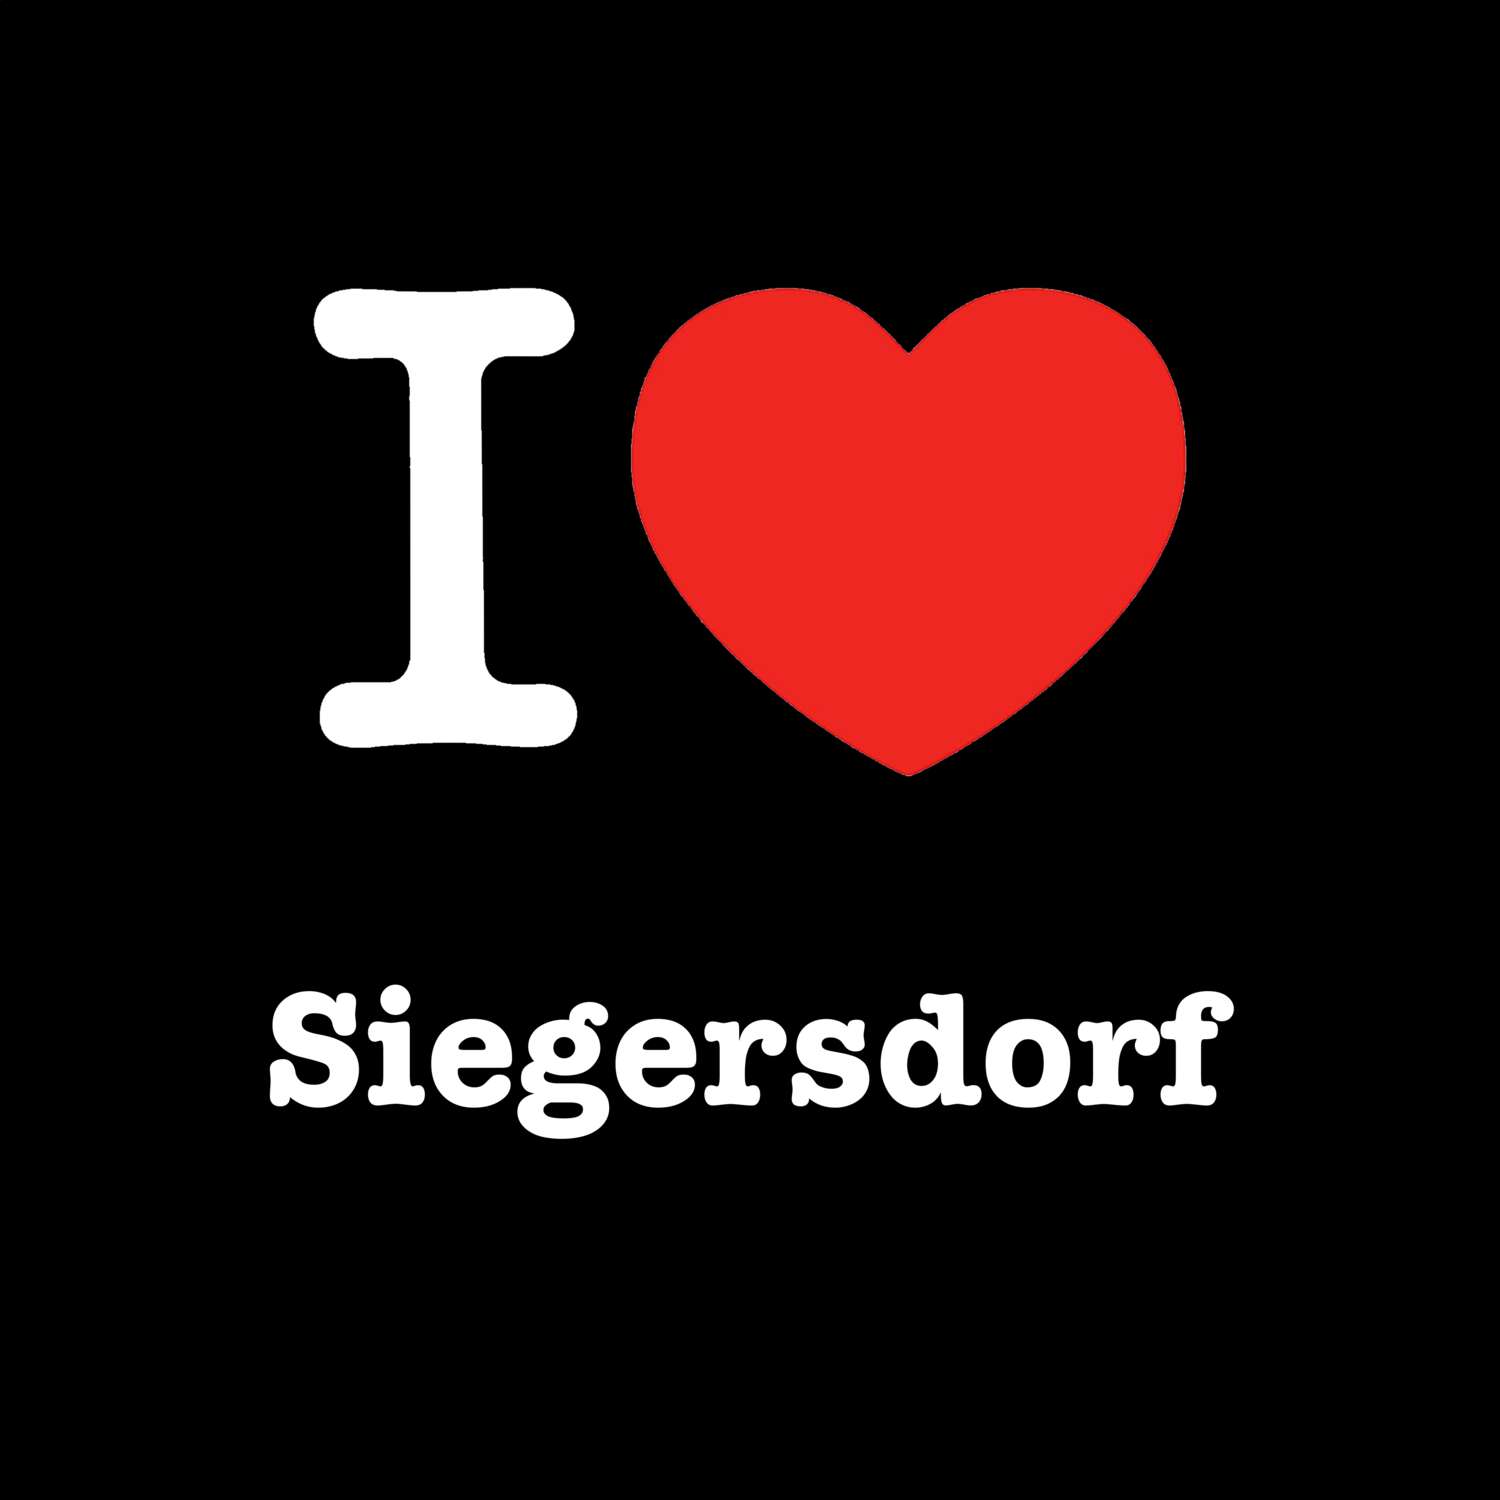 Siegersdorf T-Shirt »I love«